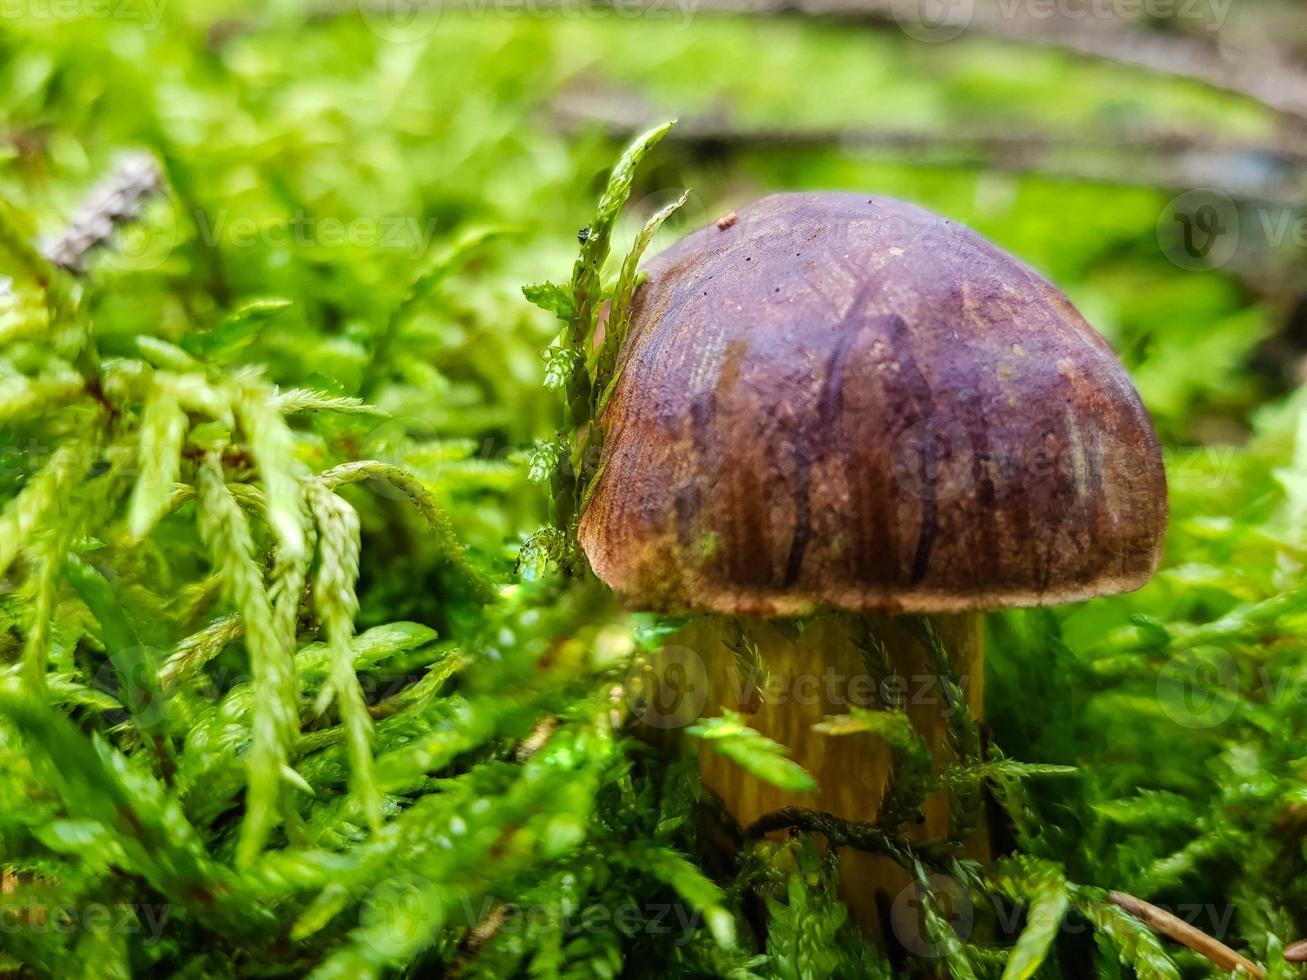 paddenstoelen op de grond van een bos foto